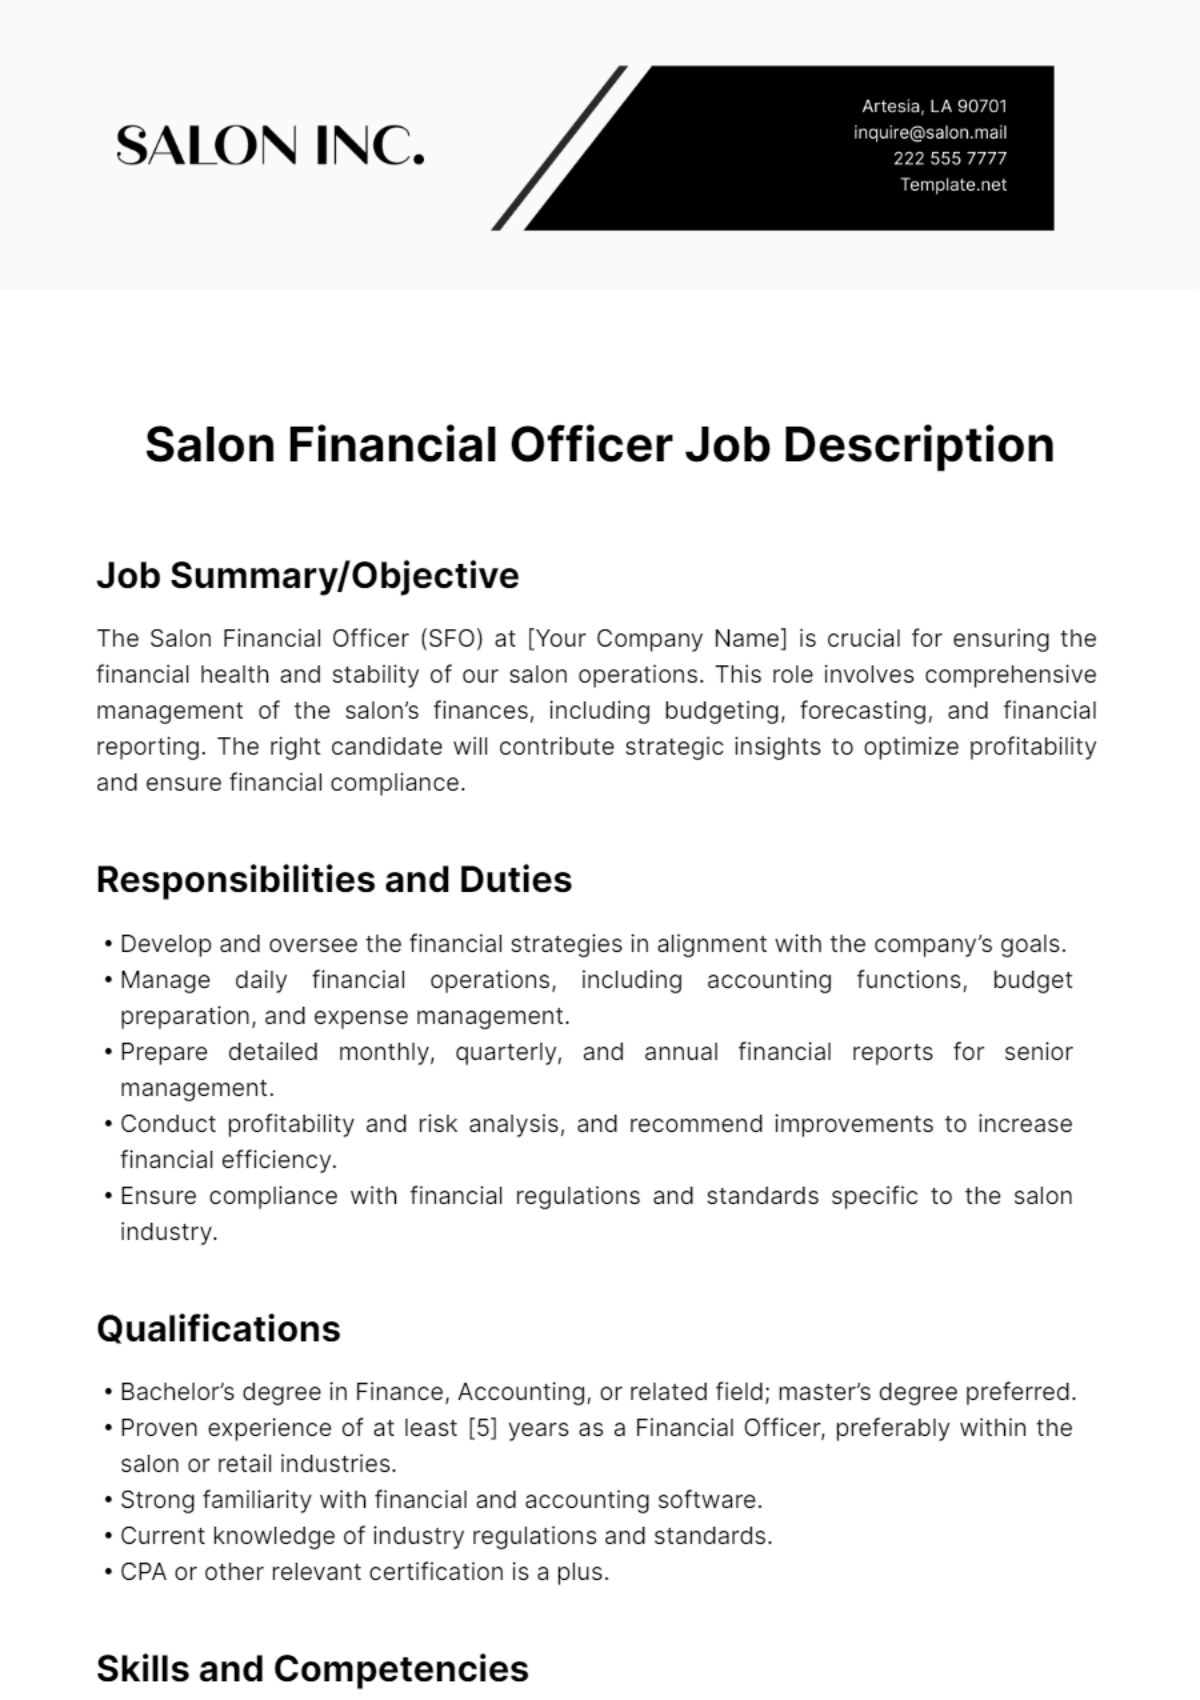 Salon Financial Officer Job Description Template